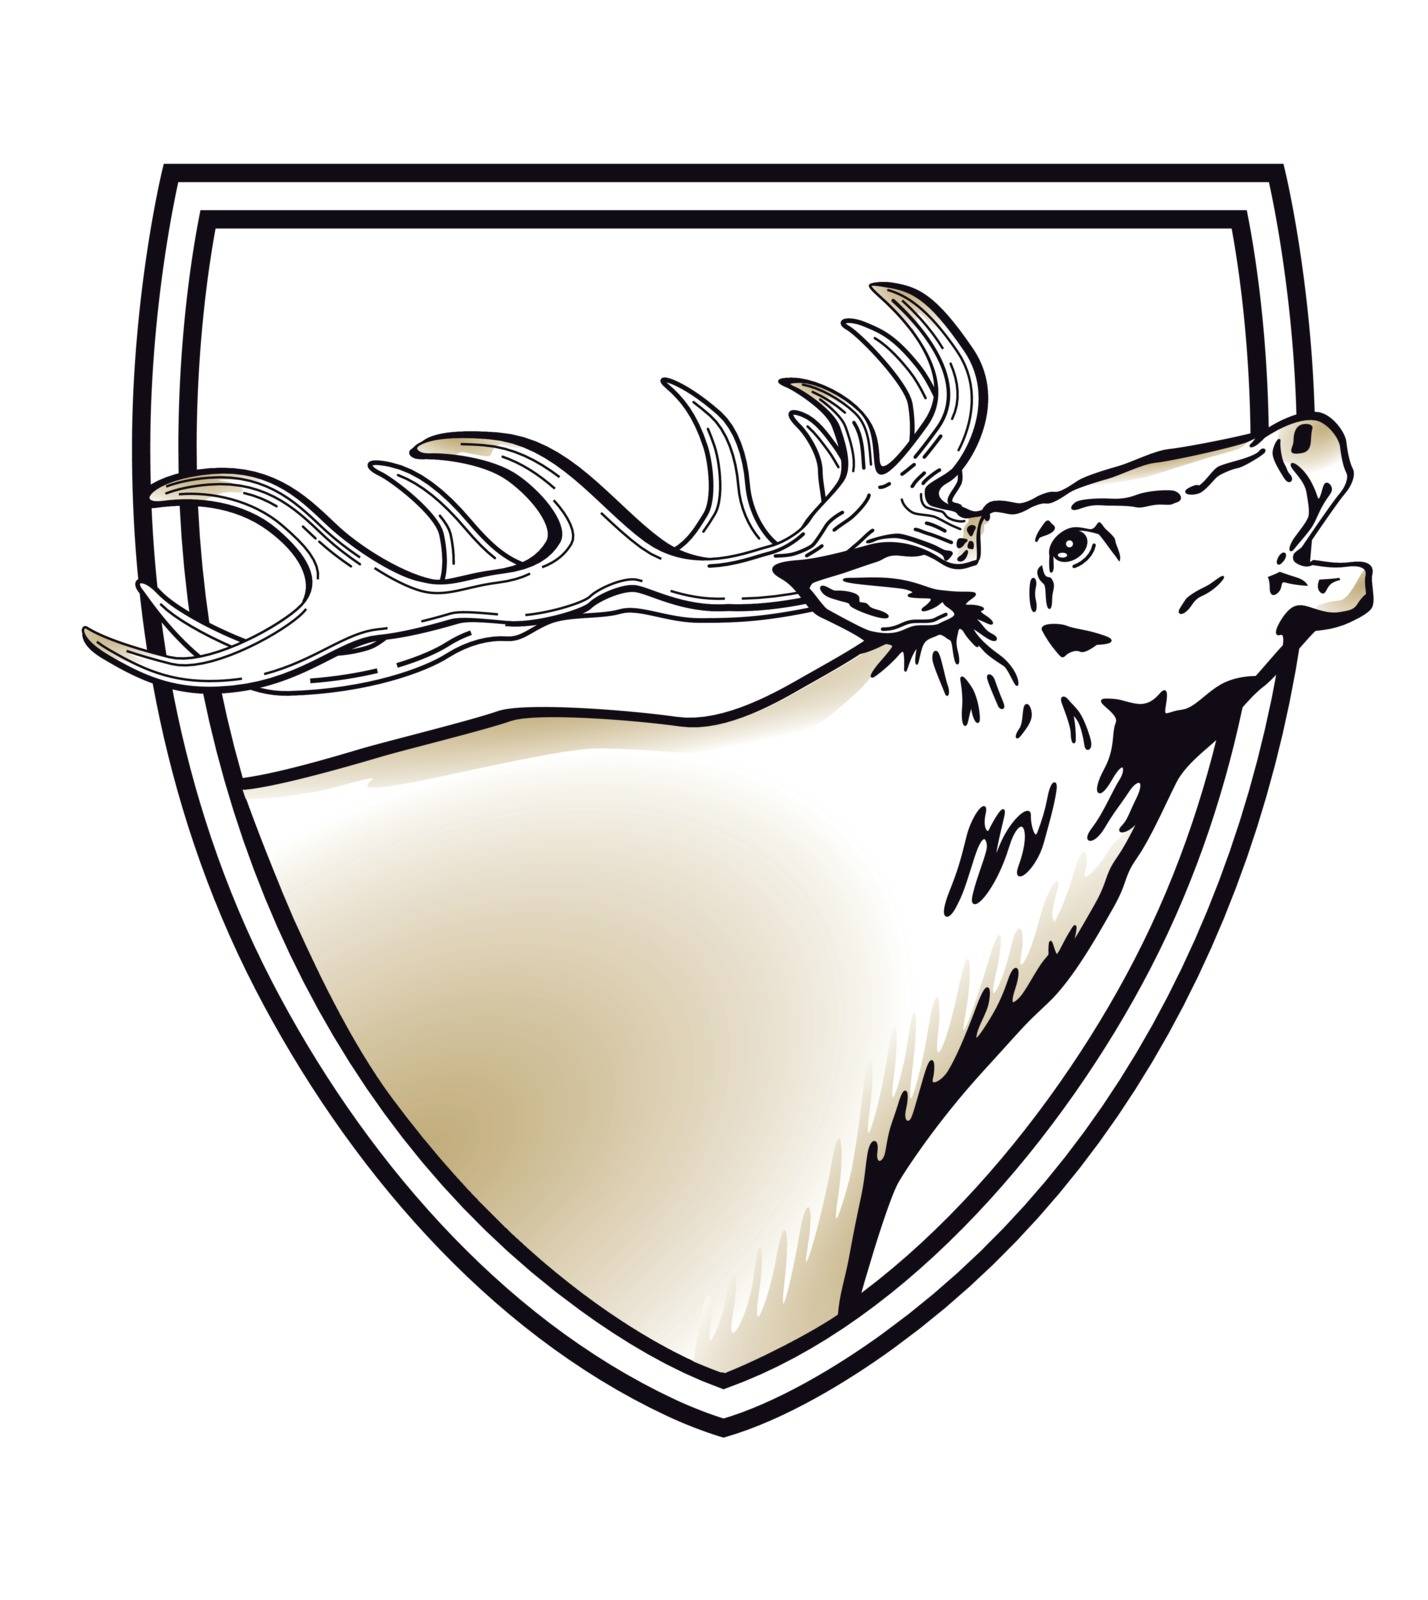 Deer coat of arms, shield, illustration